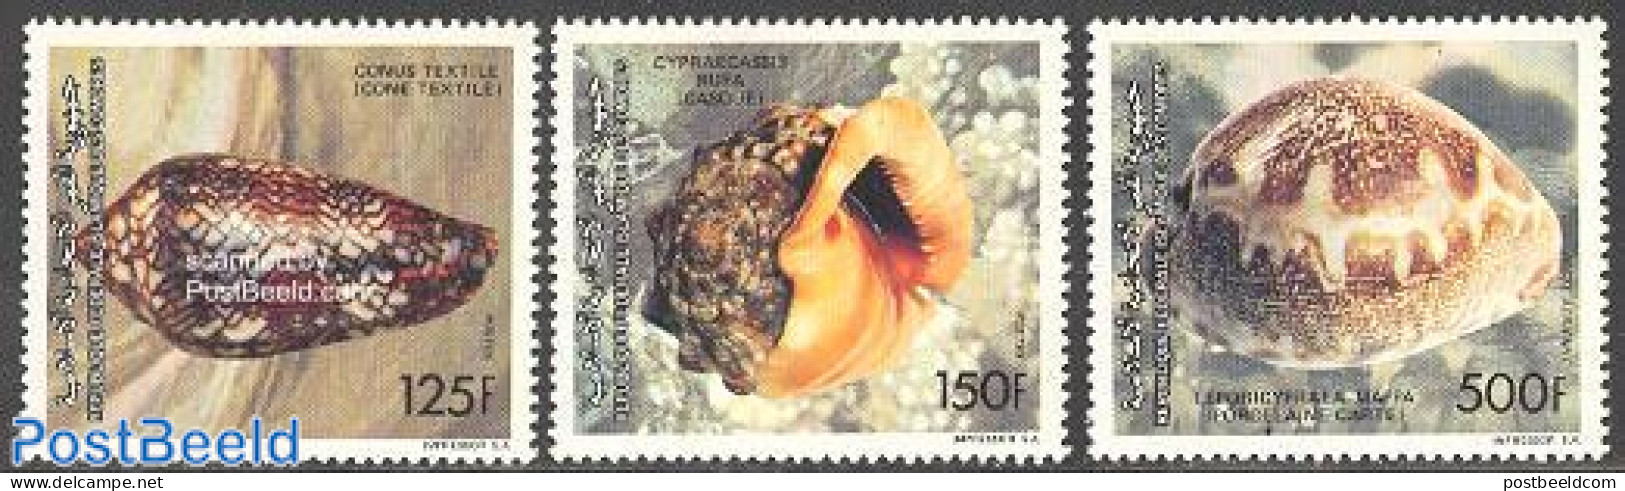 Comoros 1992 Shells 3v, Mint NH, Nature - Shells & Crustaceans - Vie Marine